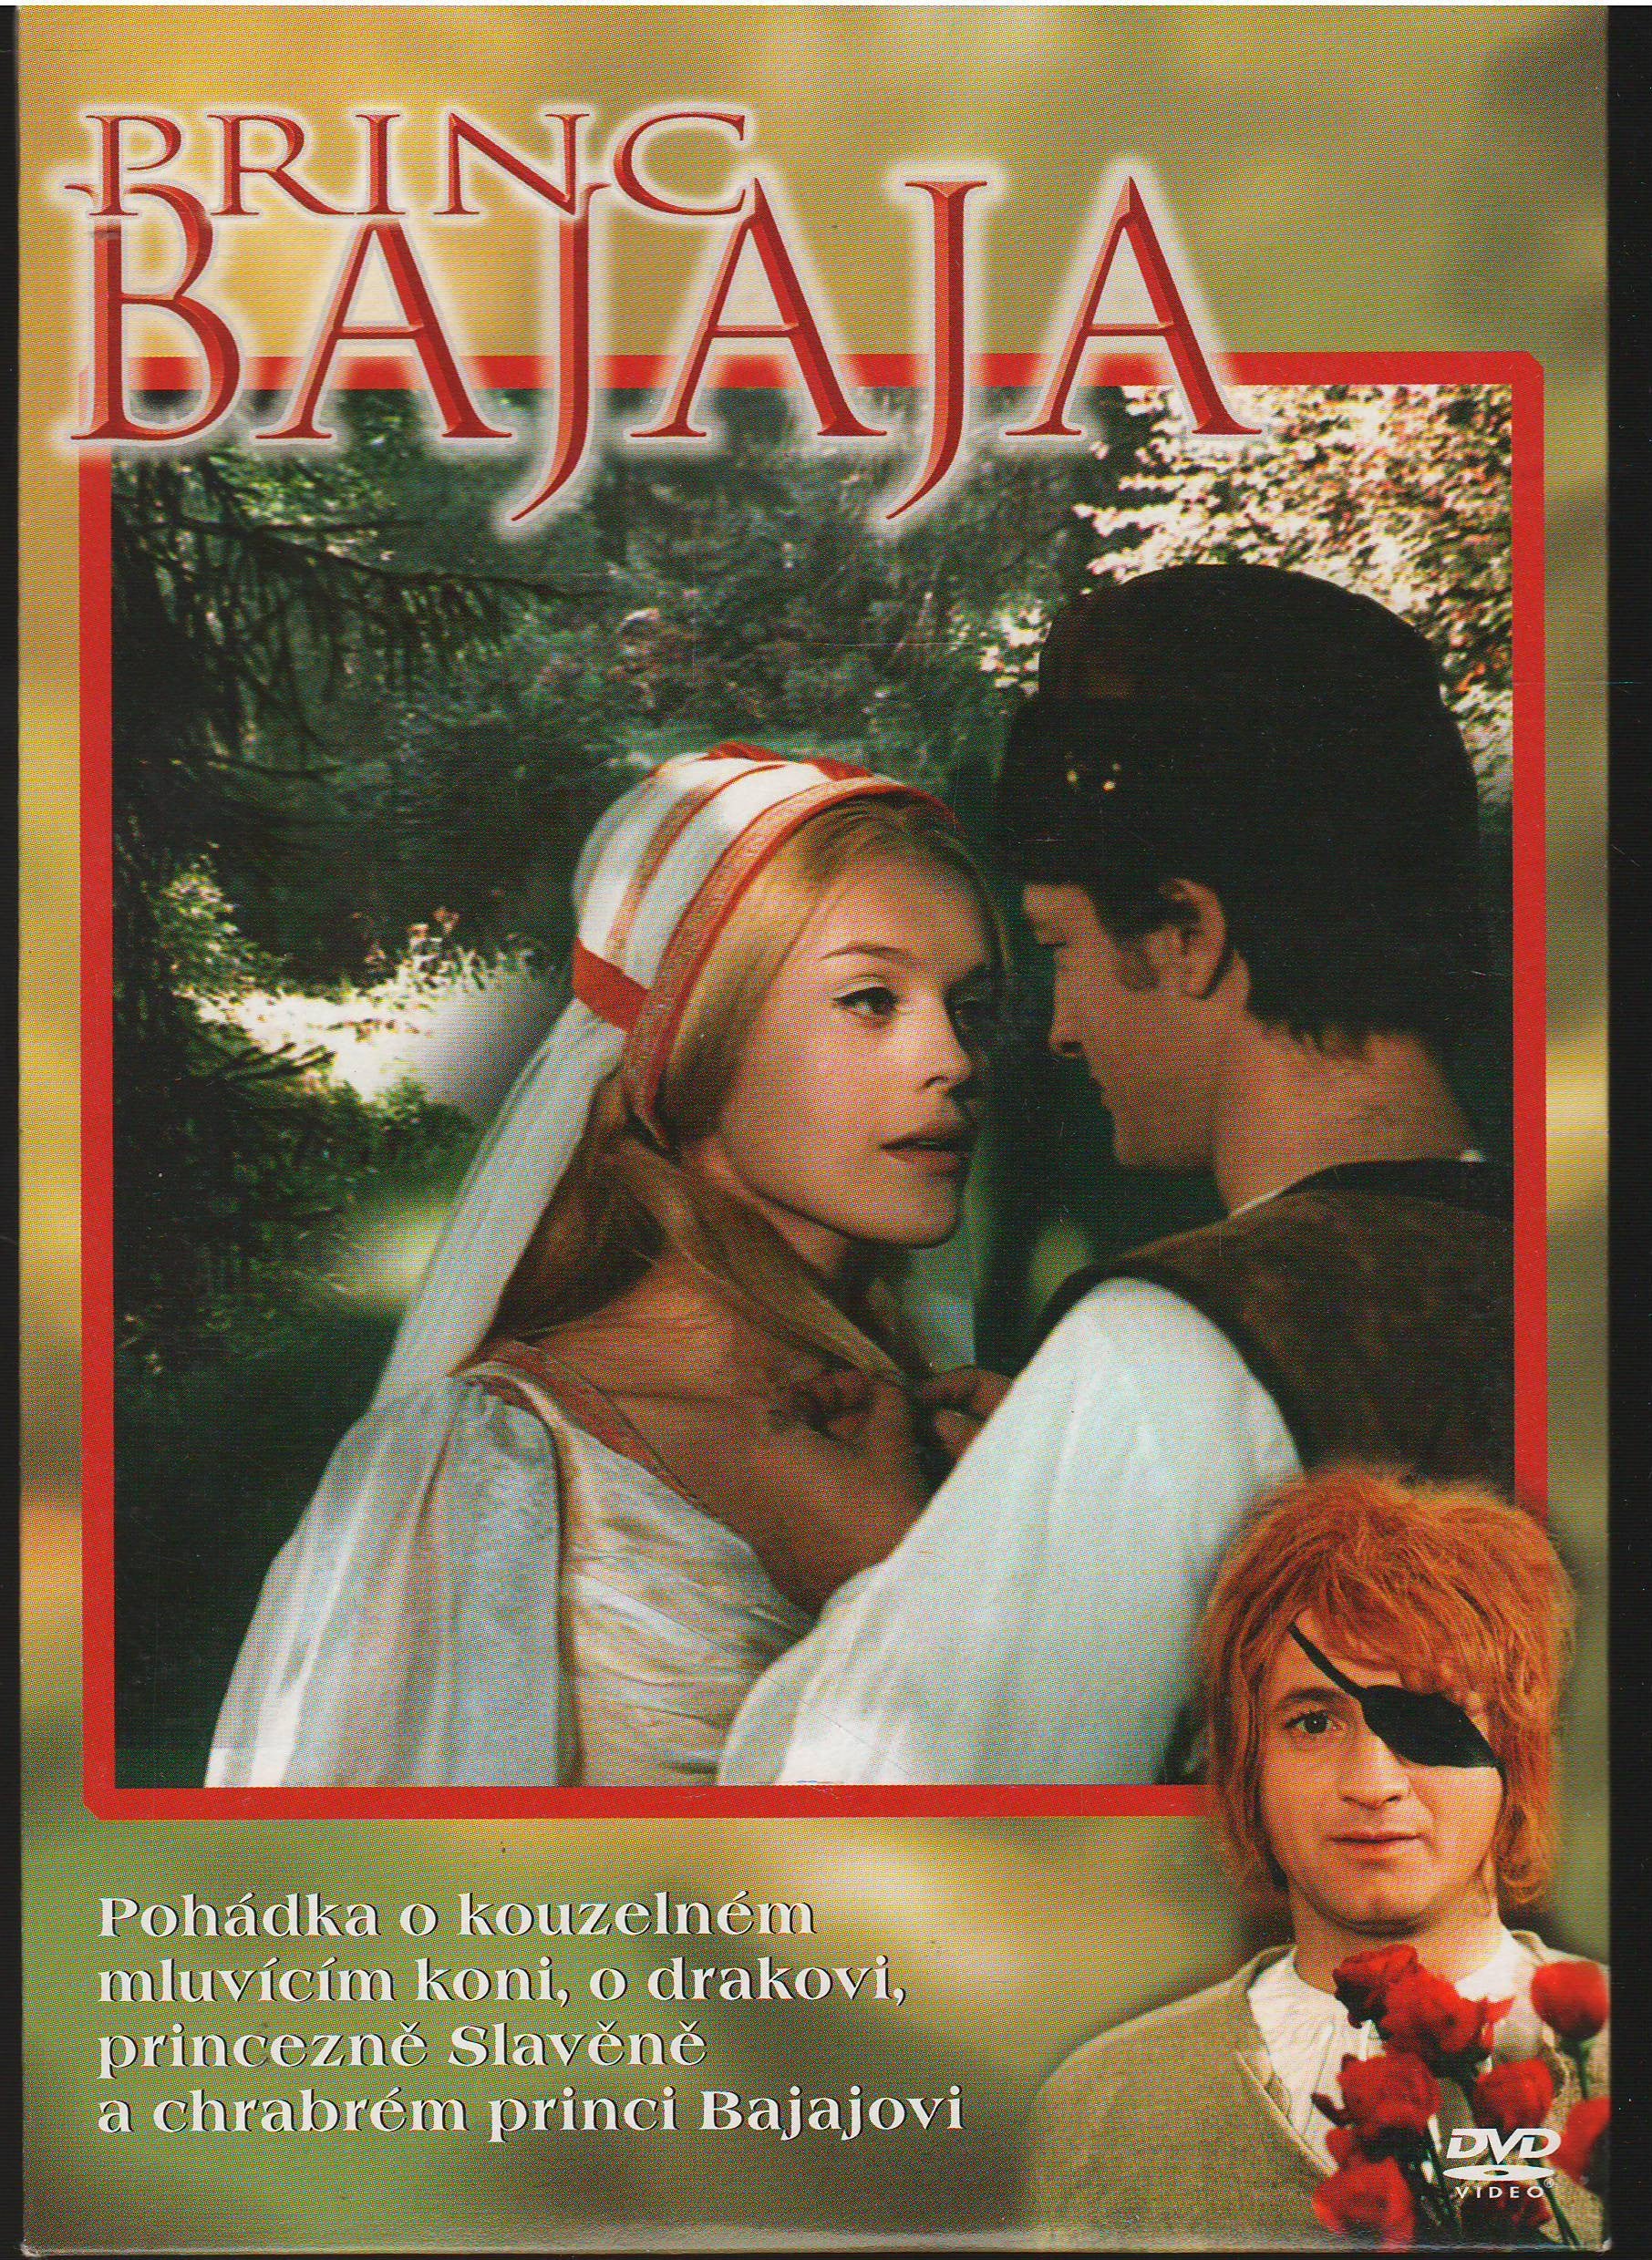 Prince Bajaja Princ Bajaja 1971 Czechoslovak Fairy Tale Dvd